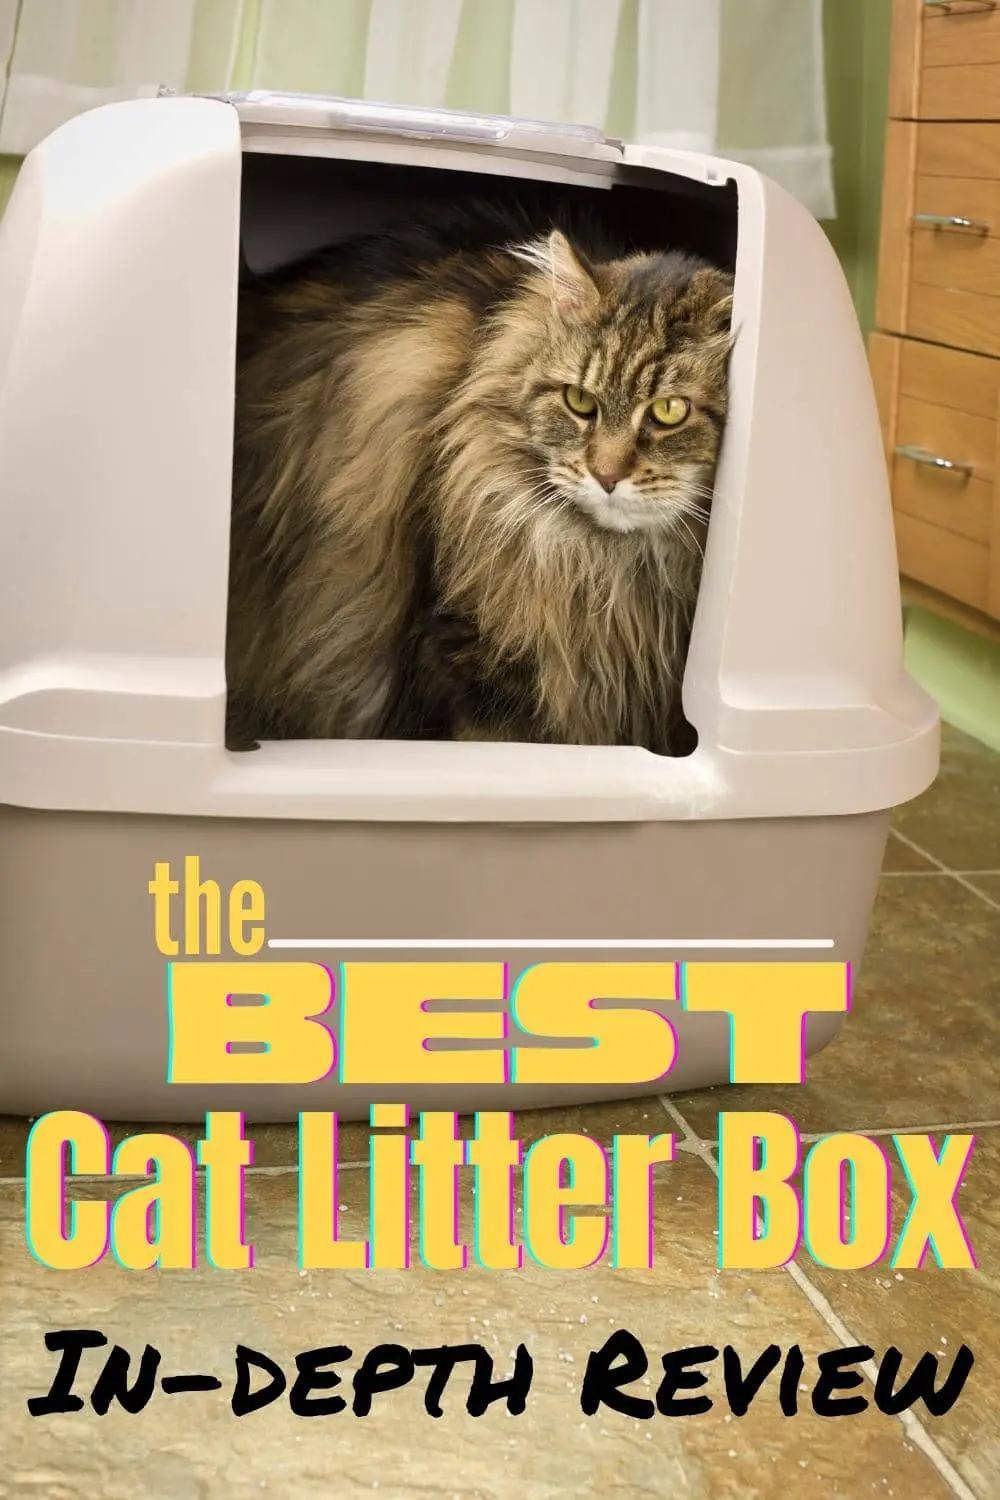 Best Cat Litter Box